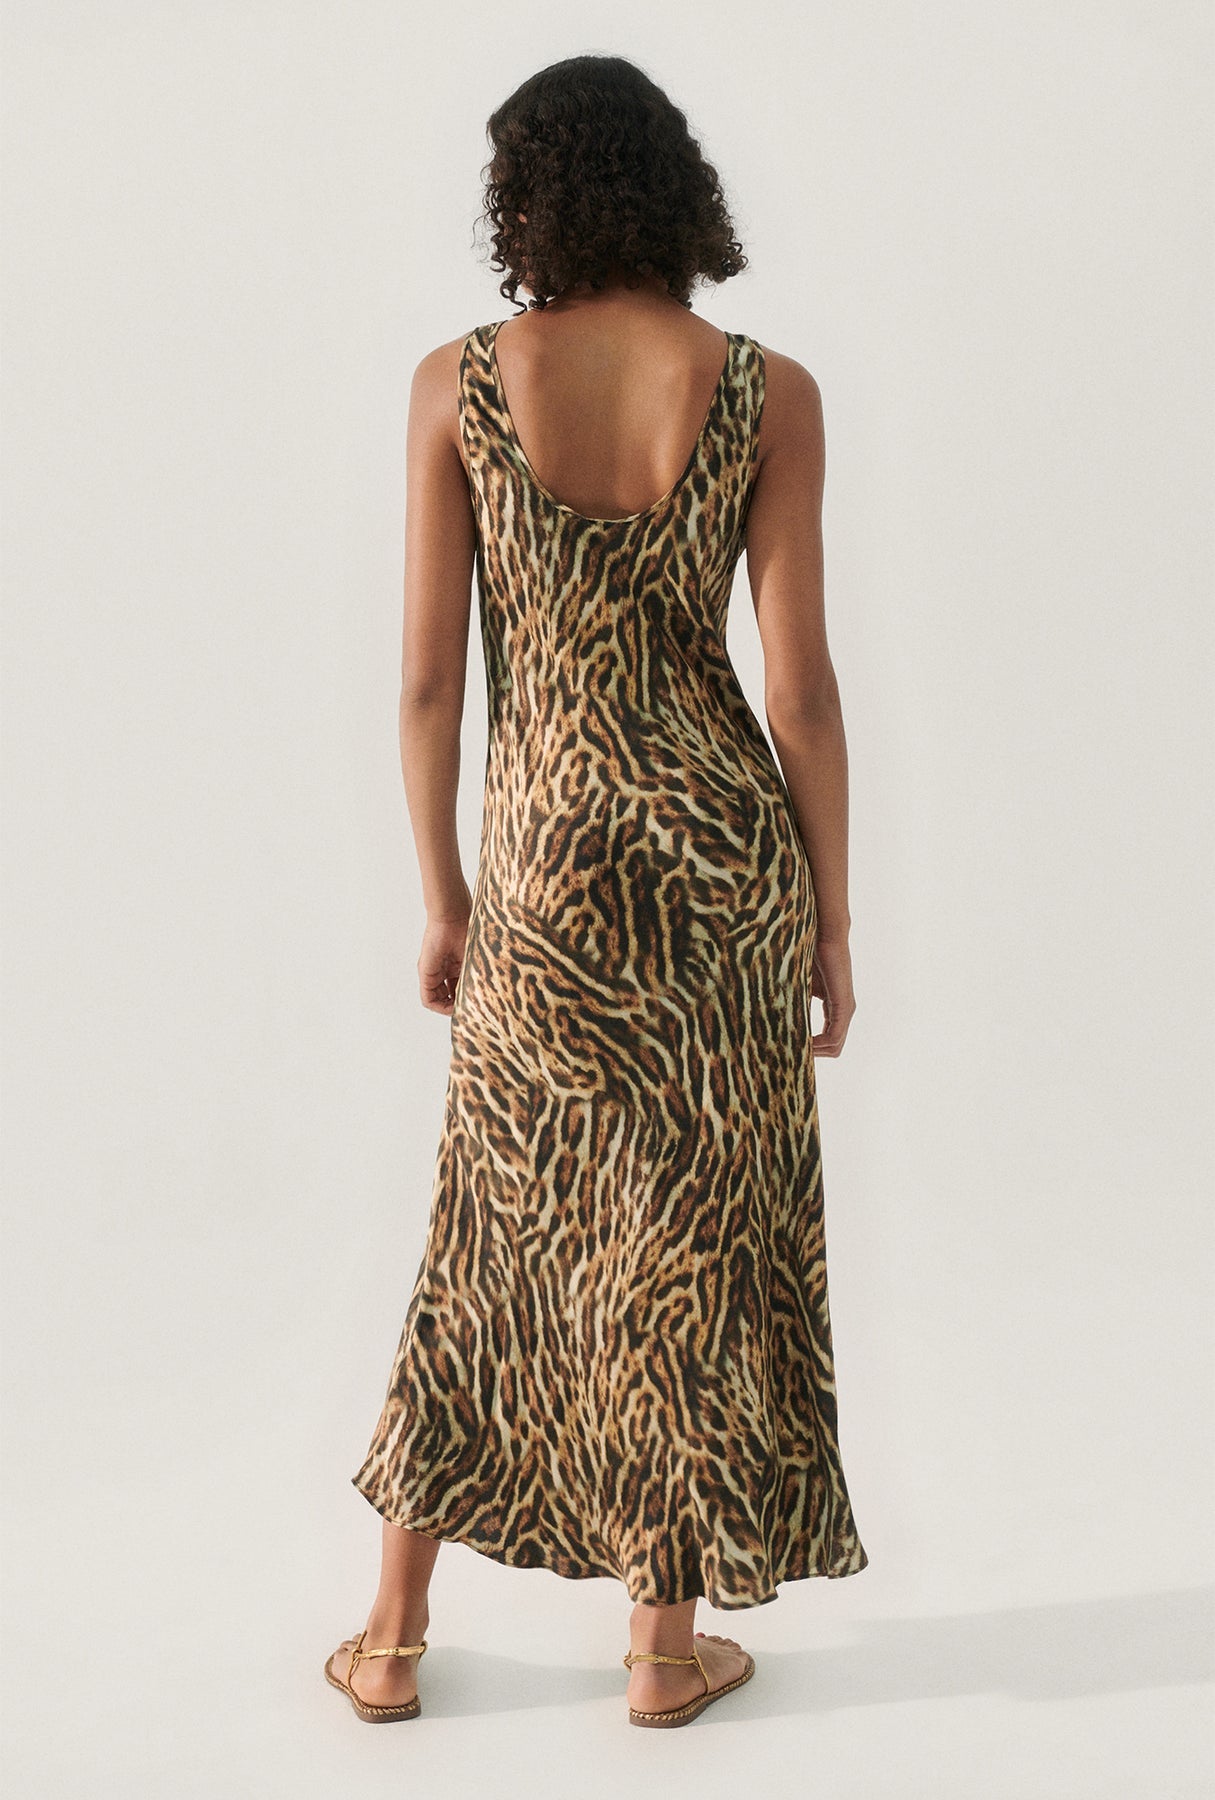 Scoop Neck Dress - Leopard